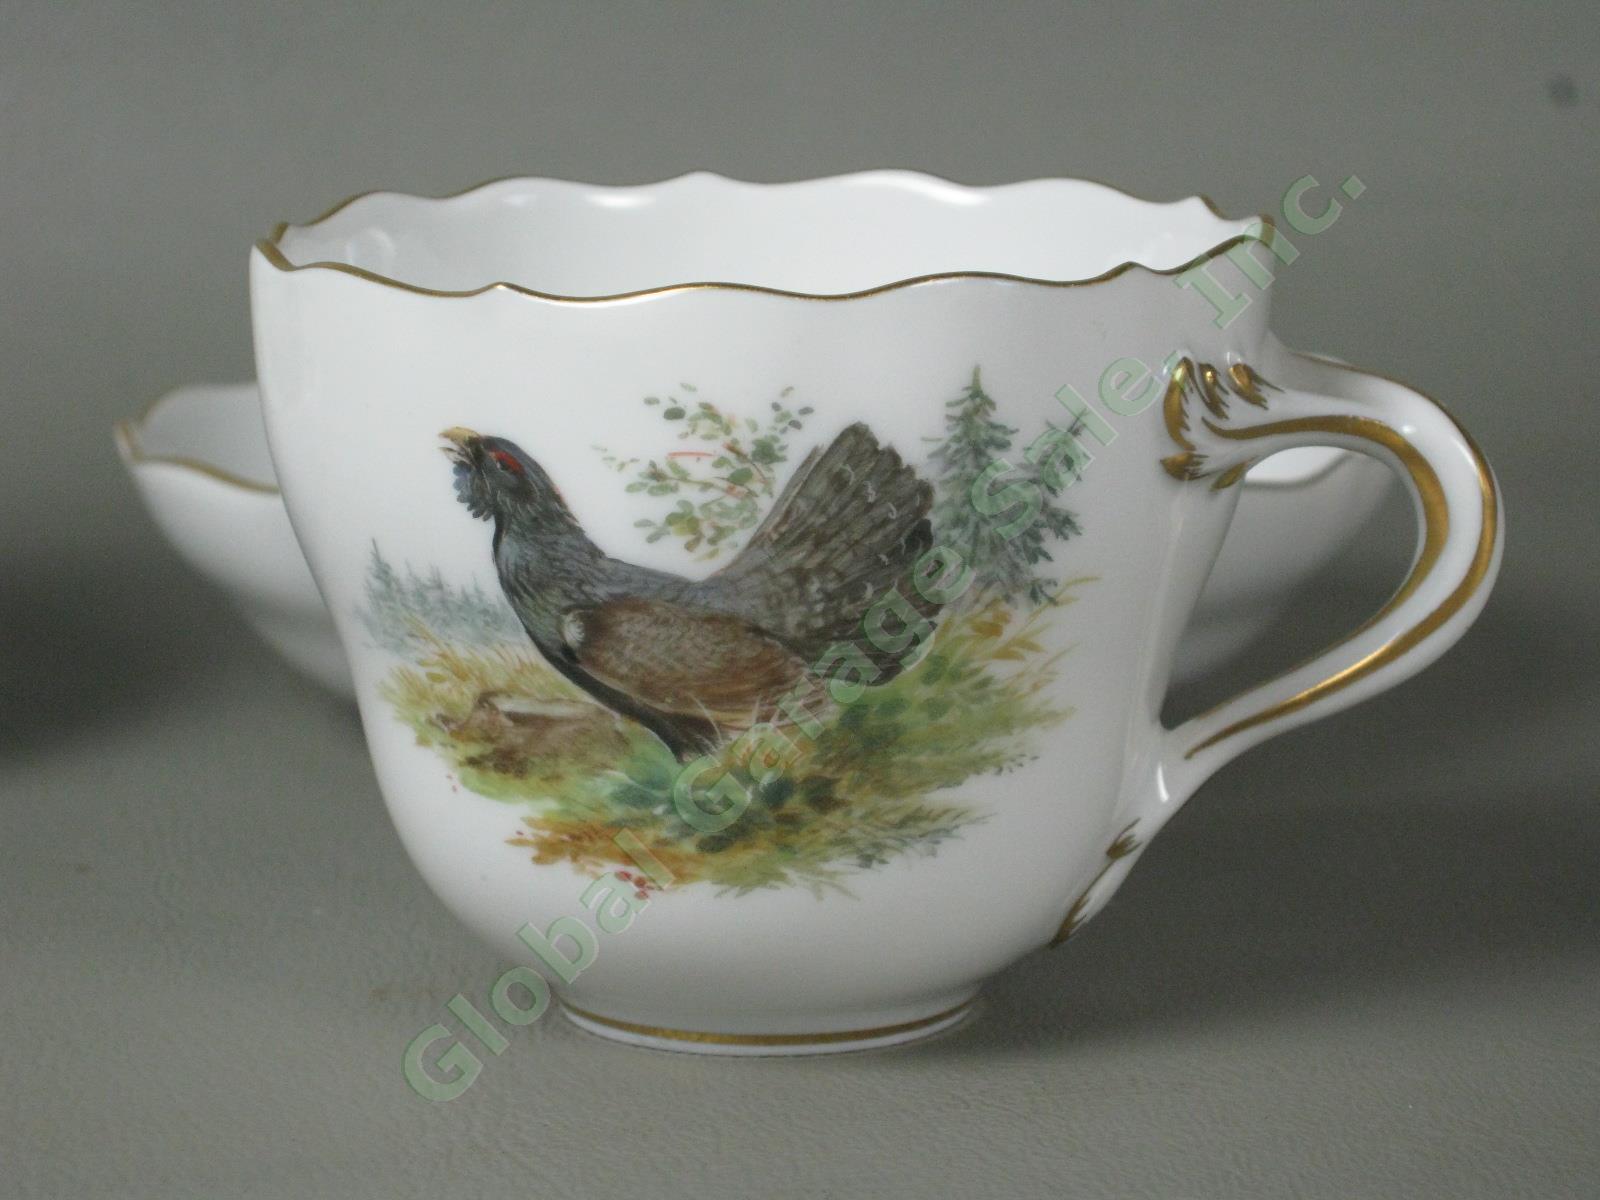 RARE Antique Meissen German Porcelain Wildlife Coffee Service Tea Set Pot Cups + 19